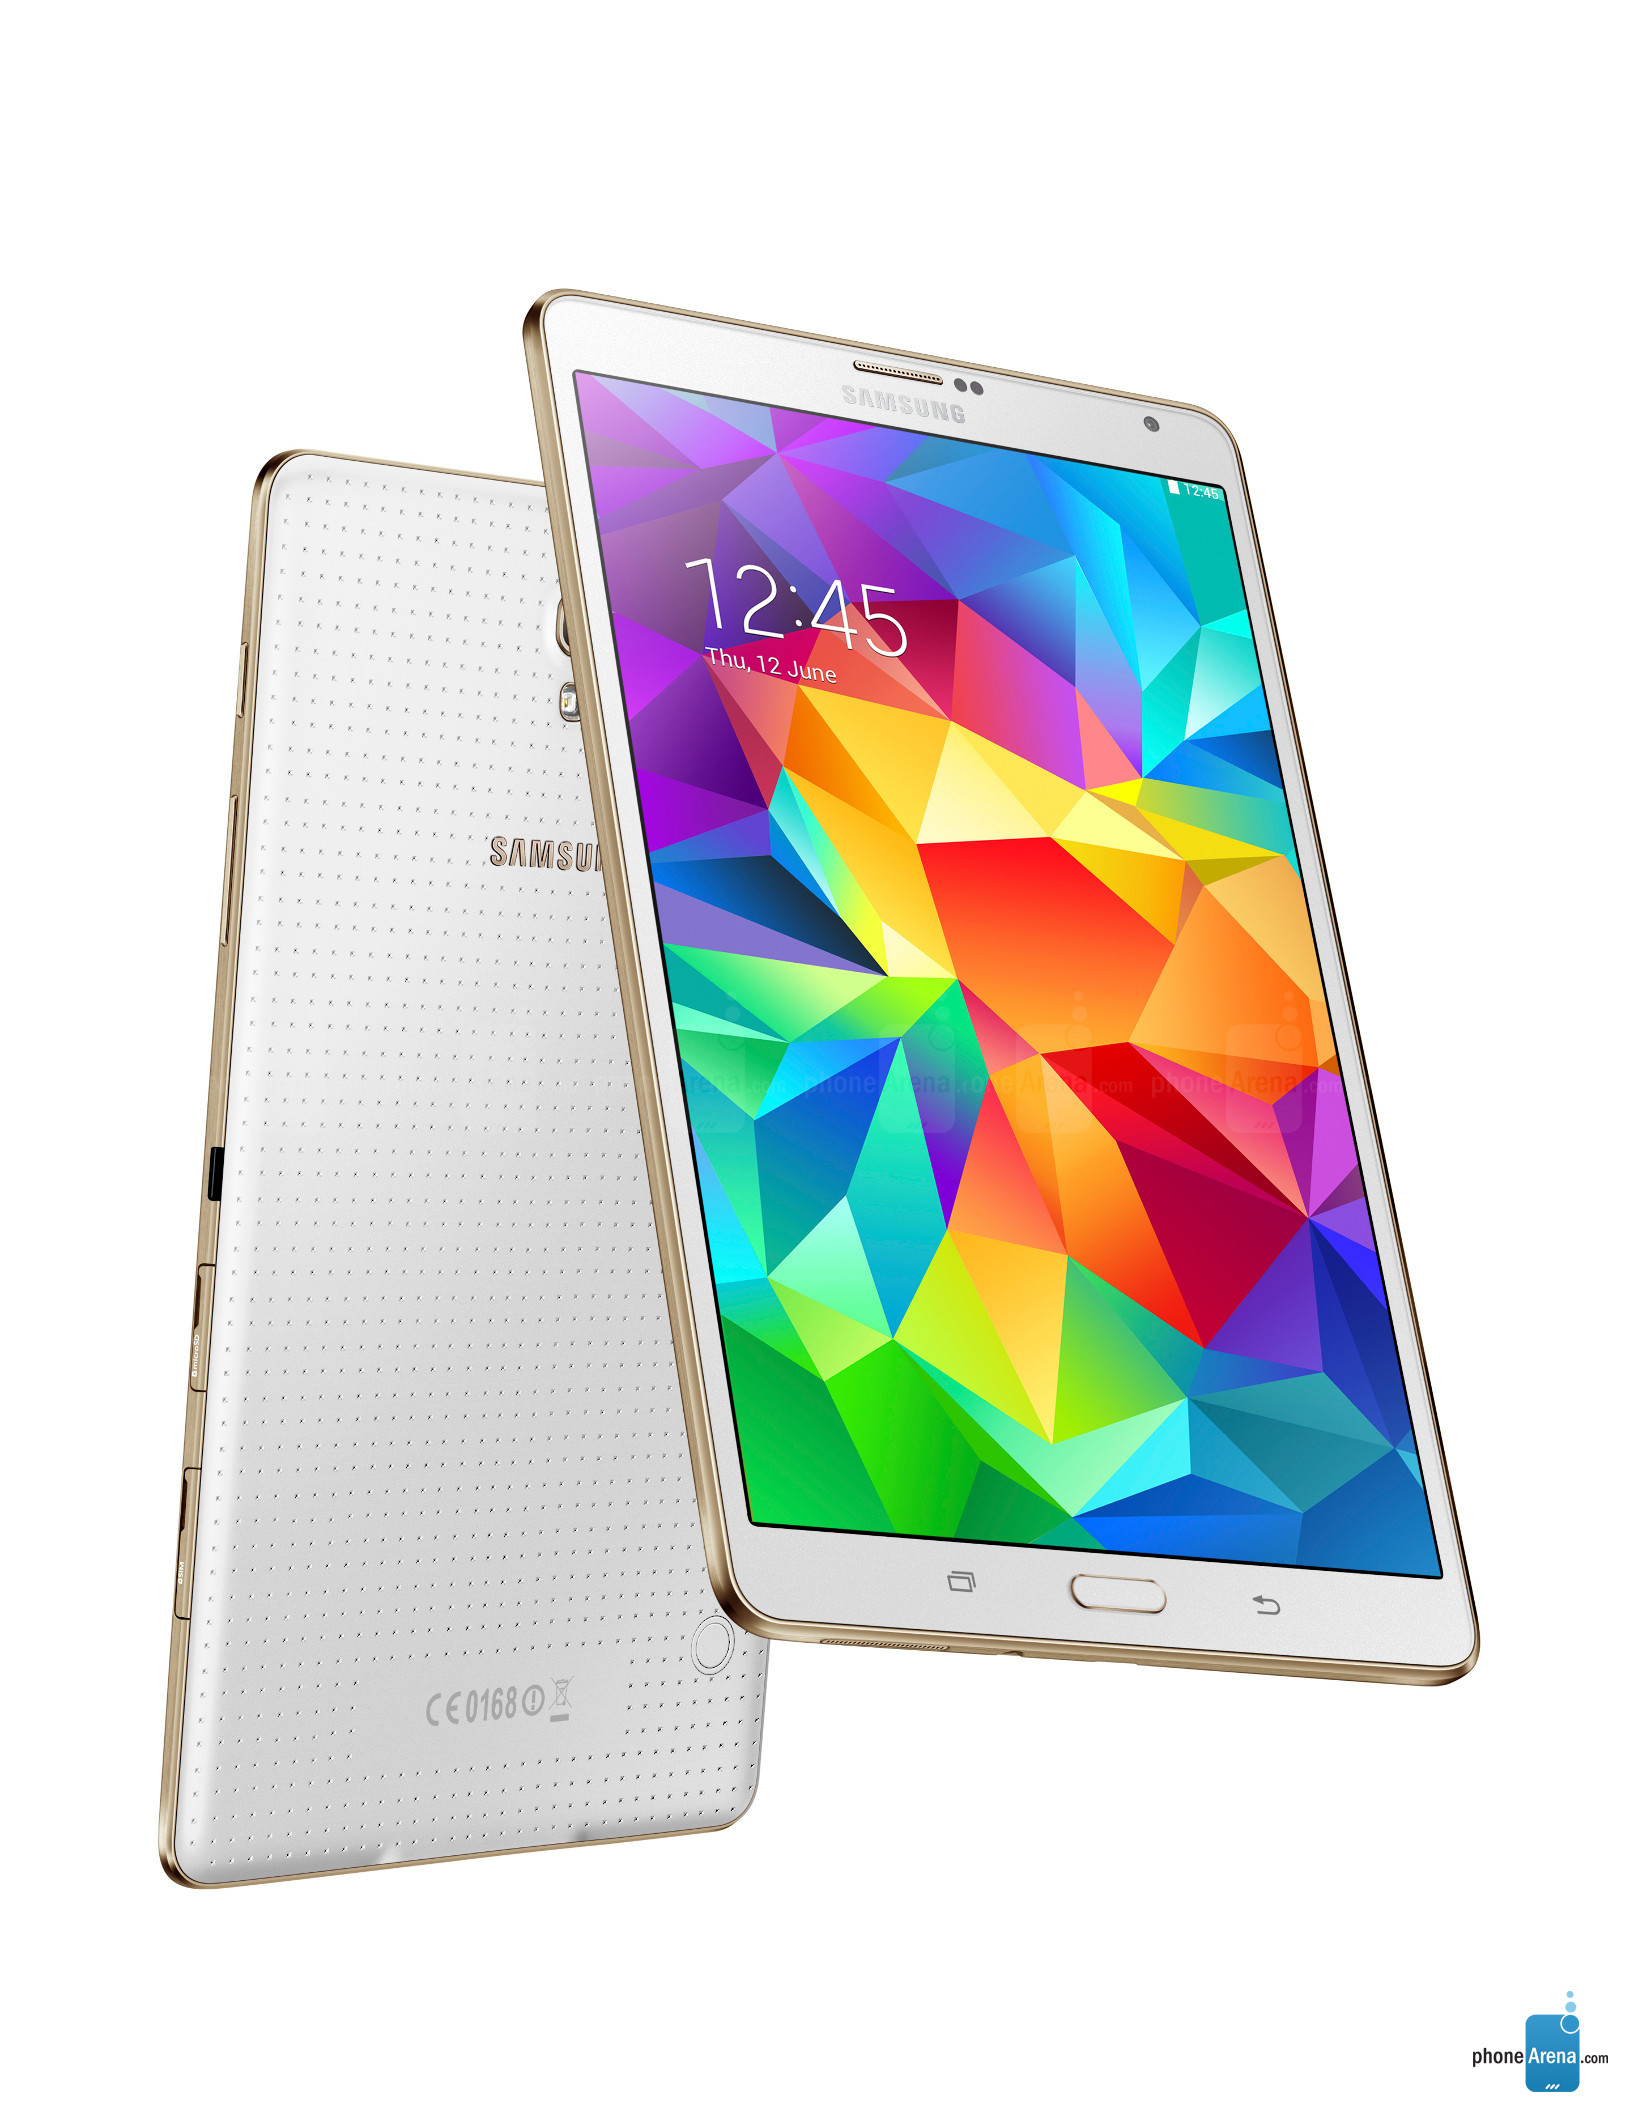 Samsung Galaxy Tab Pro 8.4 Wi-Fi - Recenzia mobilných telefónov